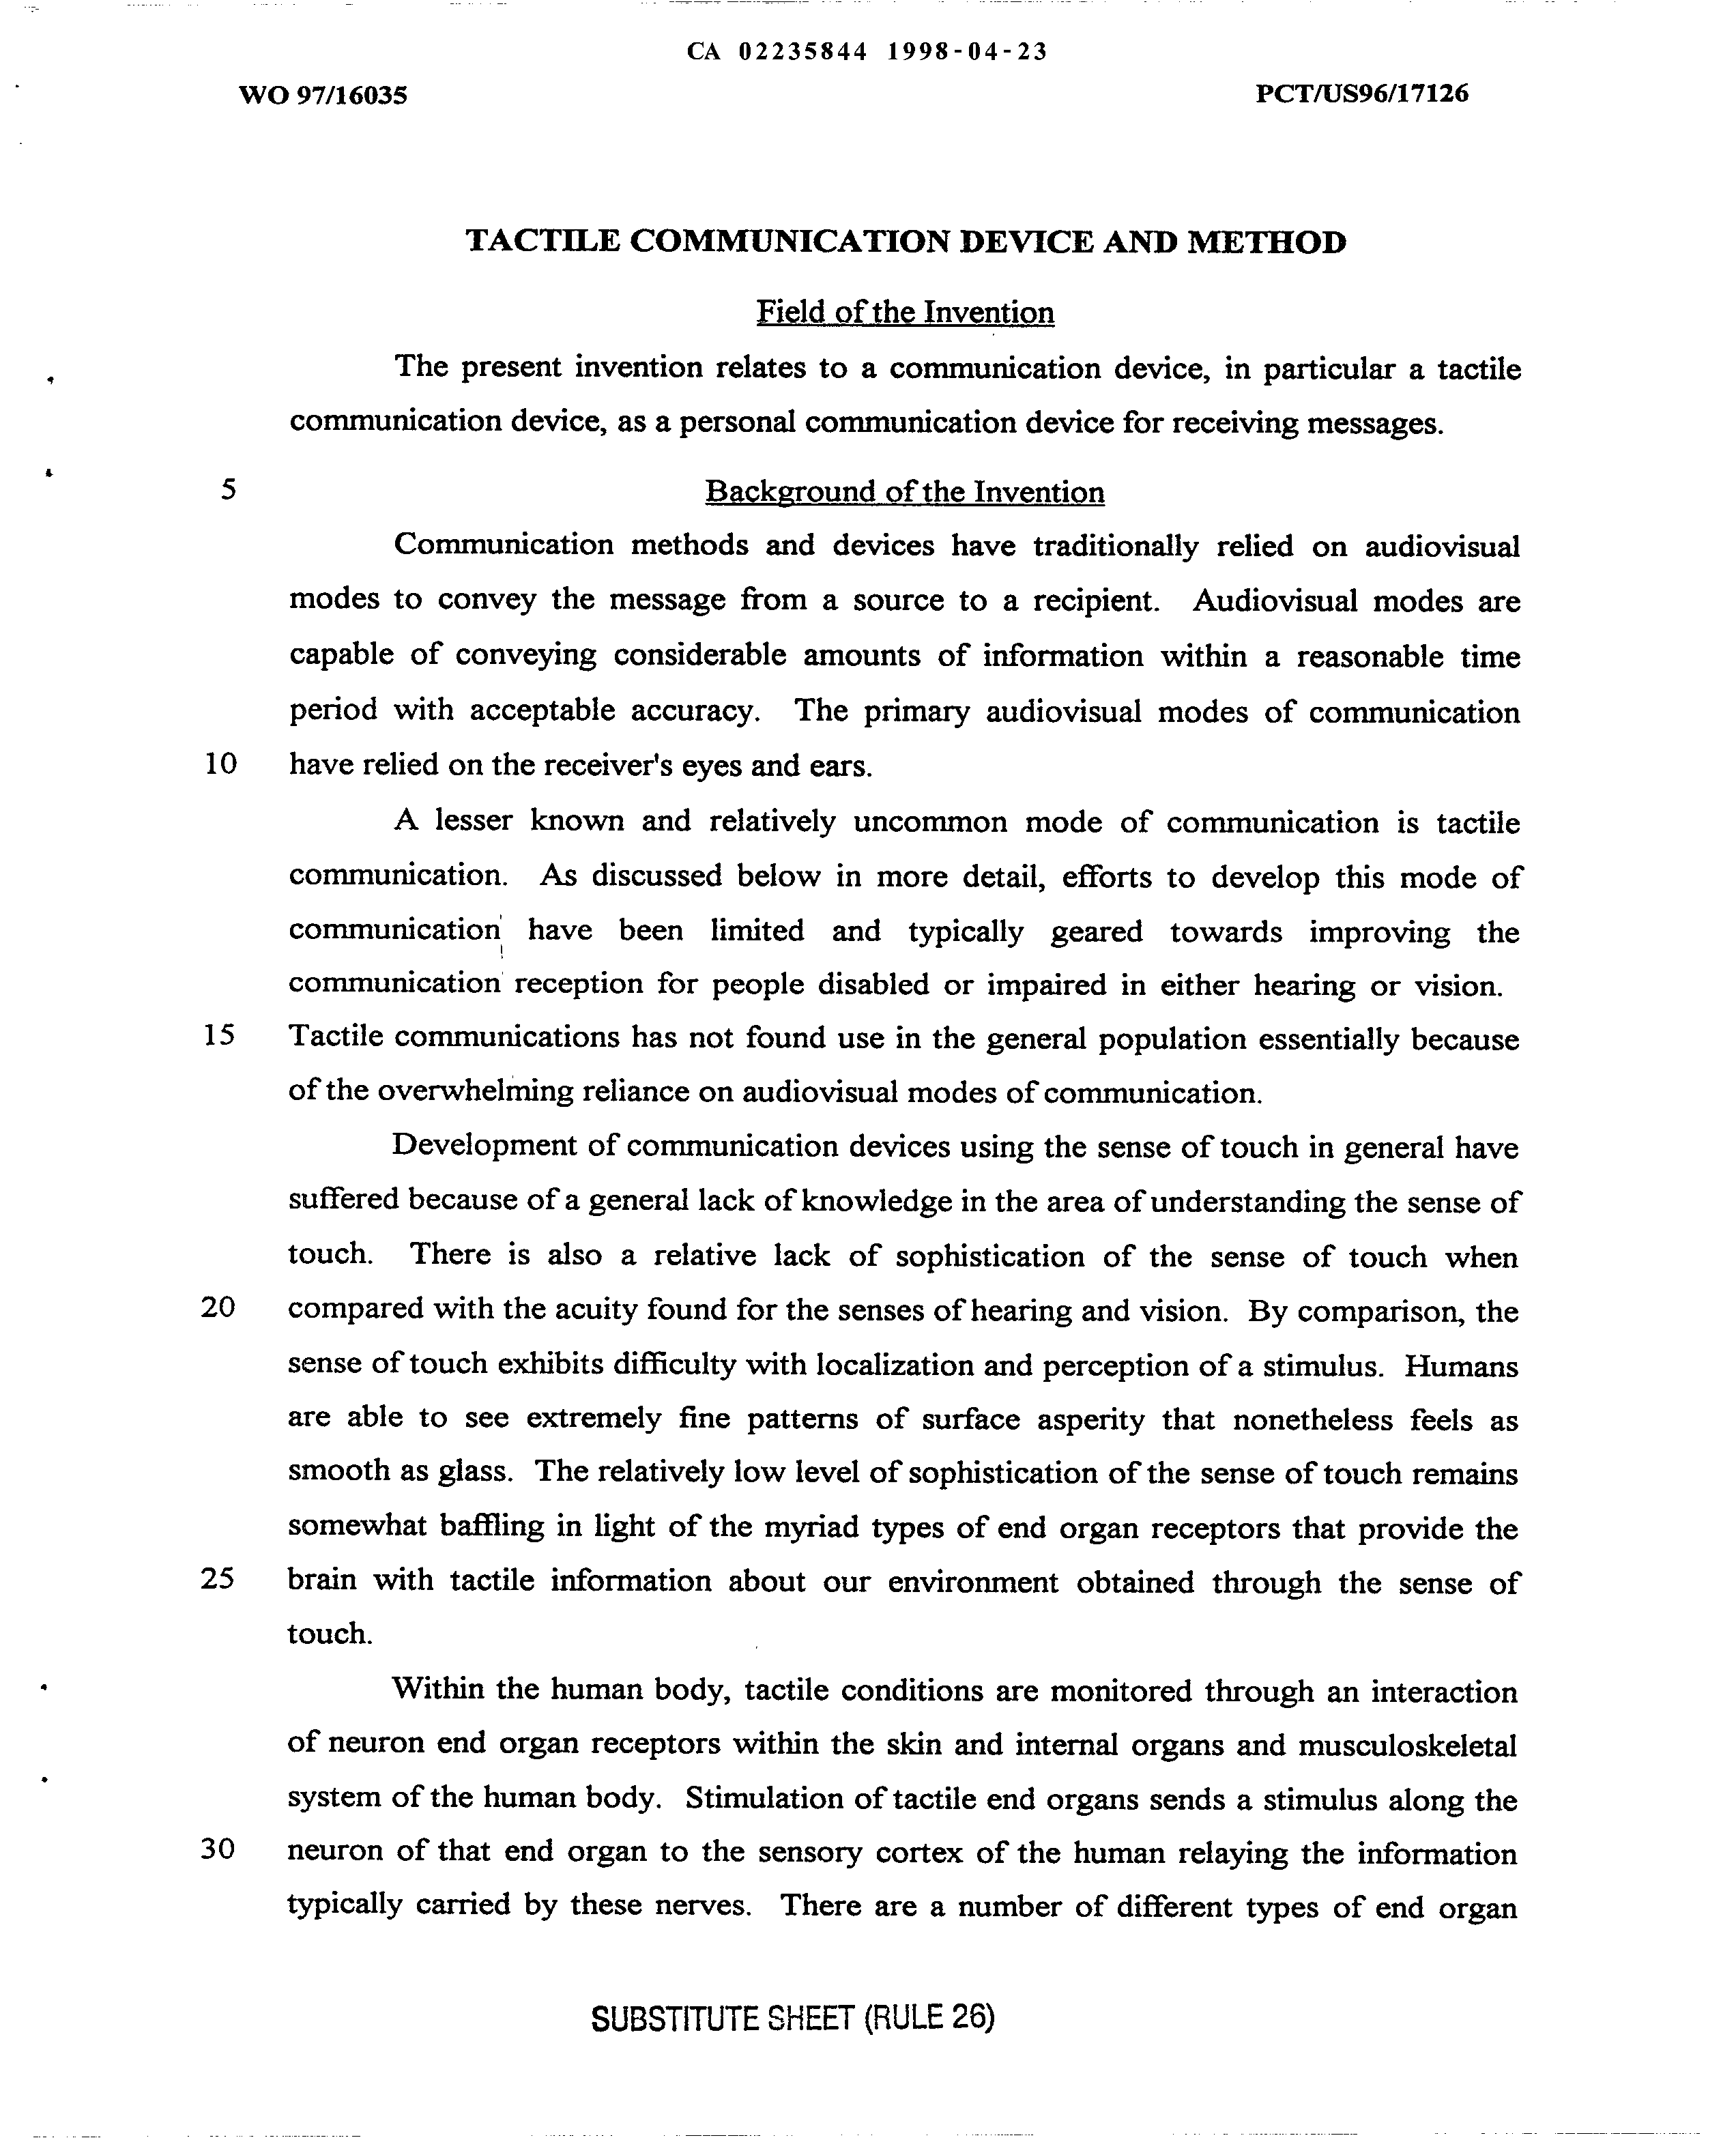 Canadian Patent Document 2235844. Description 19980423. Image 1 of 22